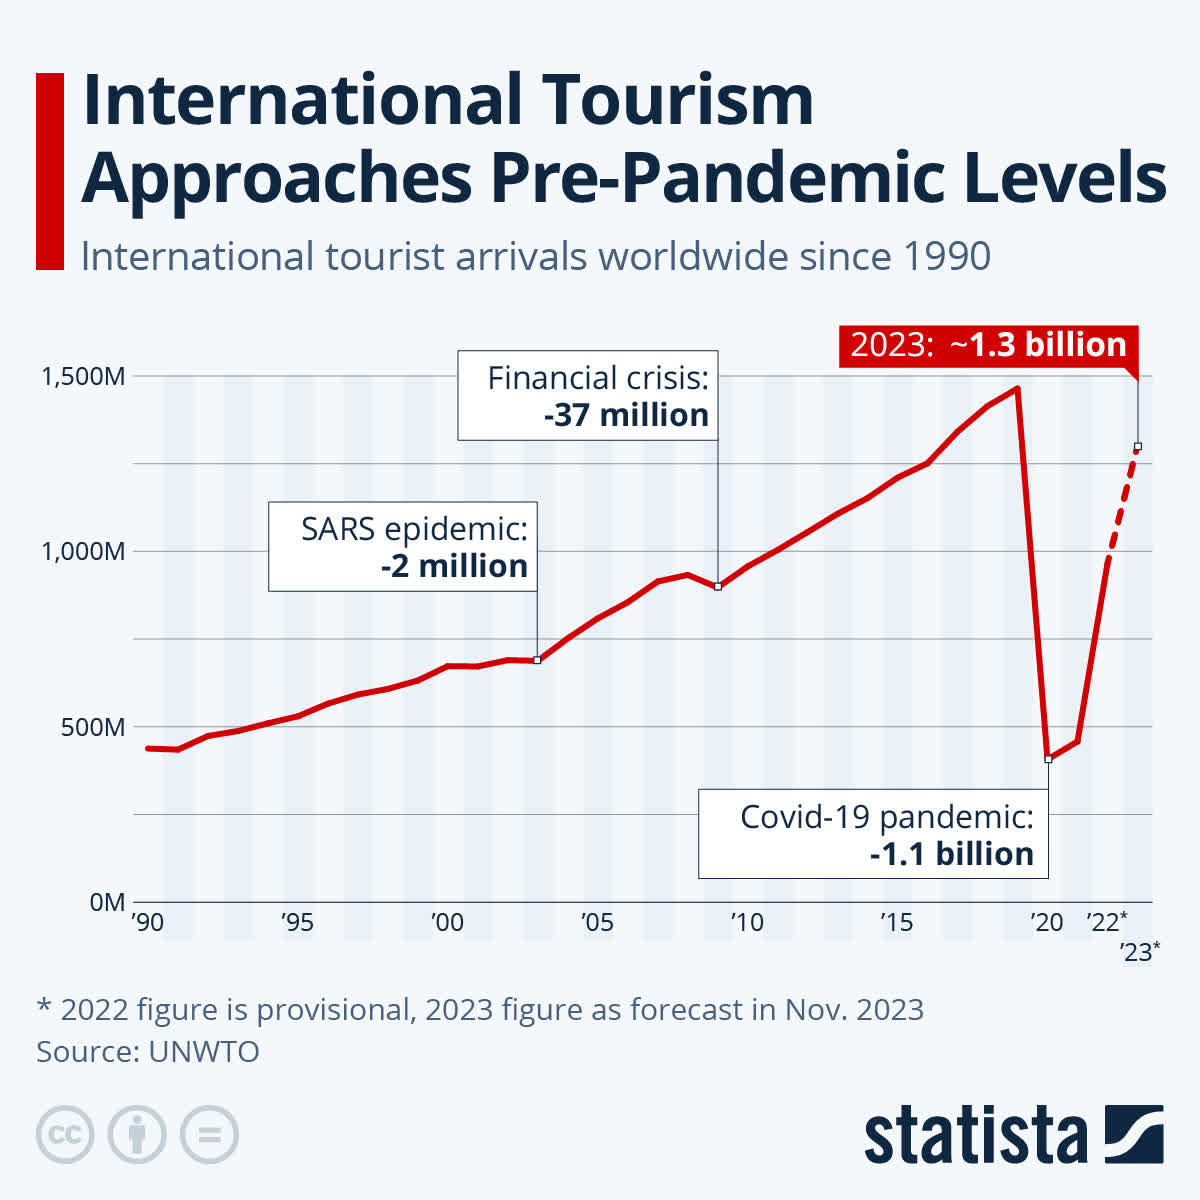 https://www.statista.com/chart/21793/international-tourist-arrivals-worldwide/